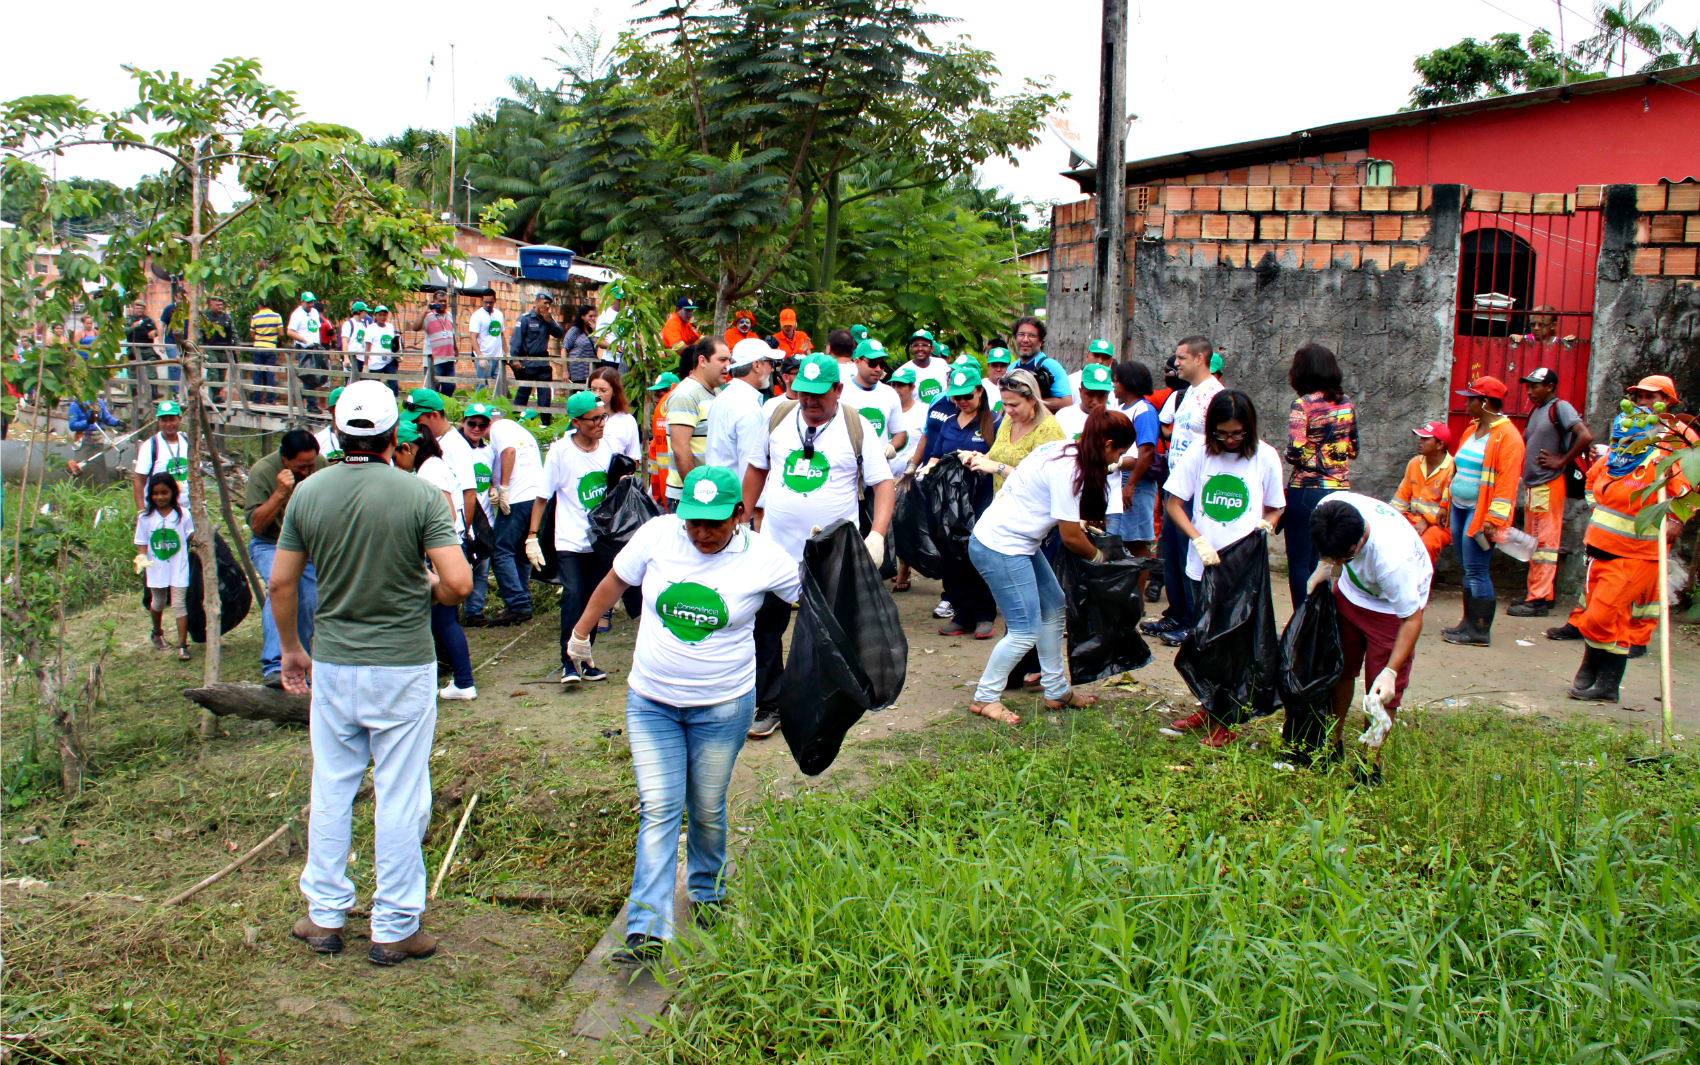 Participantes recolhem lixo durante o Consciência Limpa  (Foto: Katiúscia Monteiro/ Rede Amazônica)